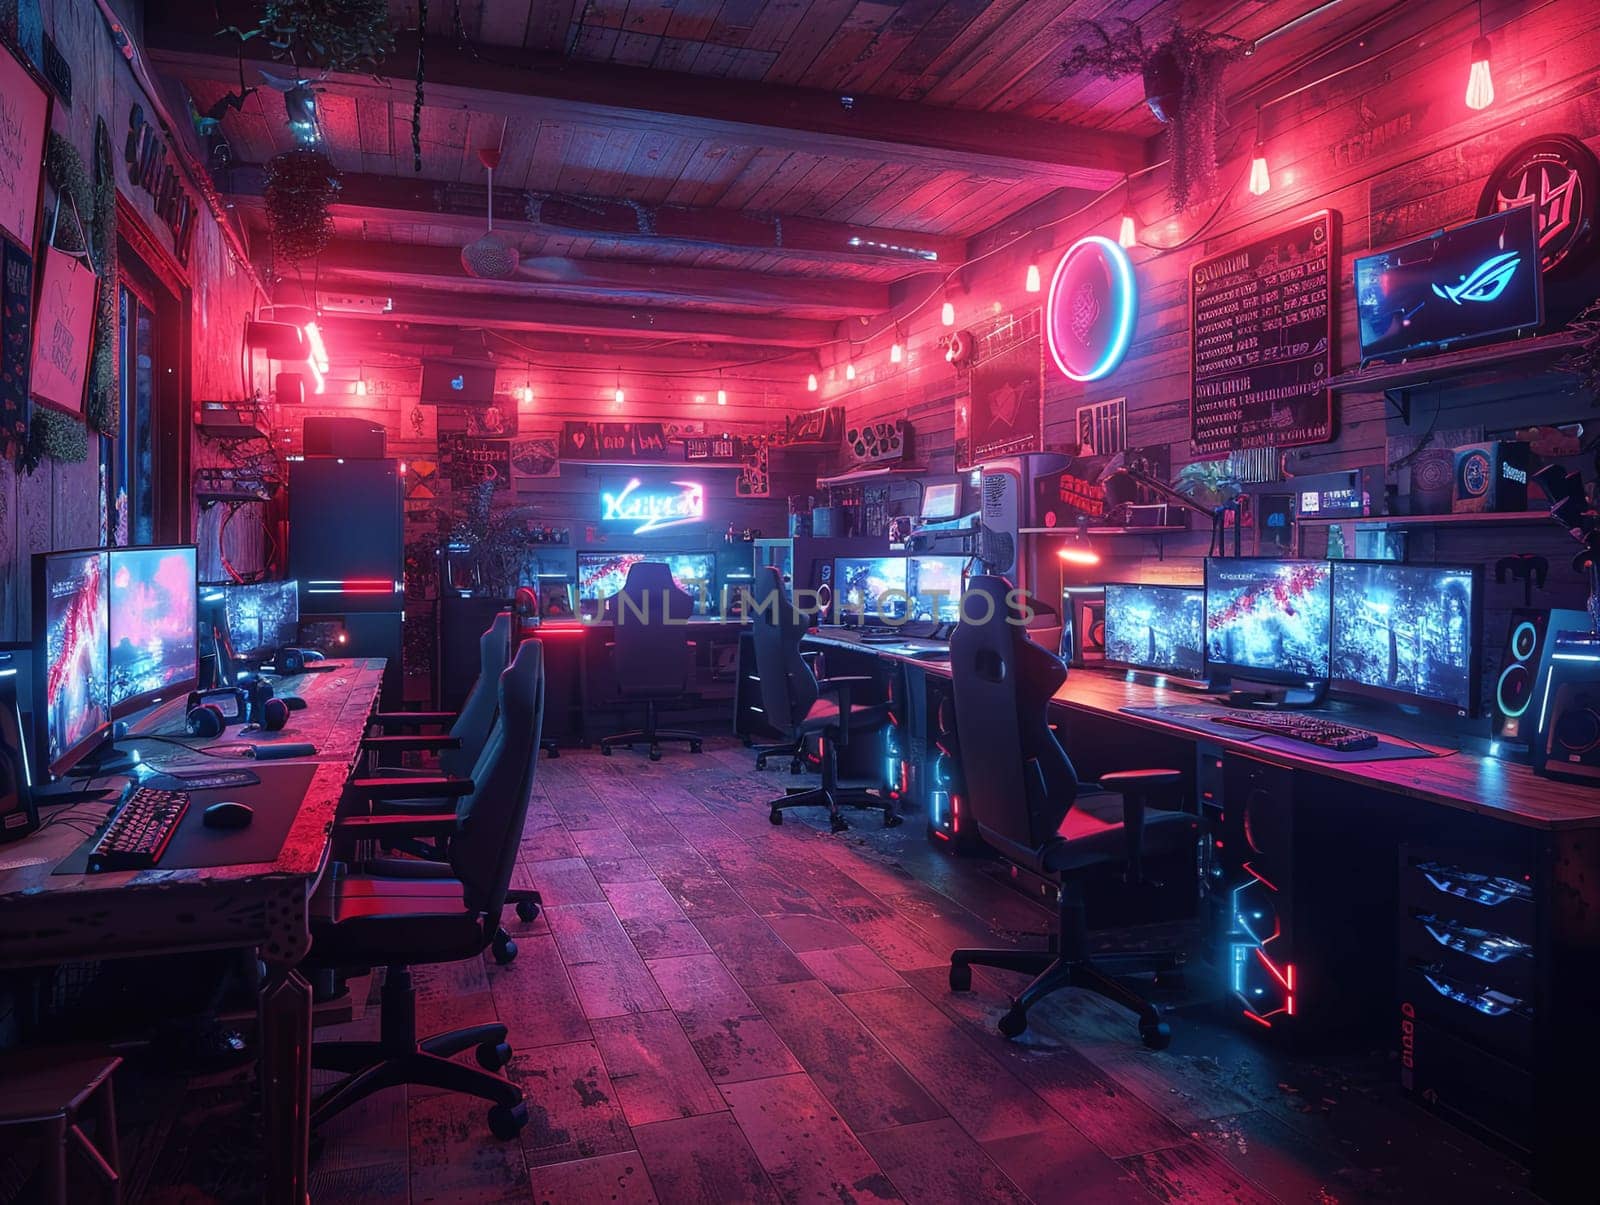 Cyberpunk gaming den with neon lights and high-tech setups